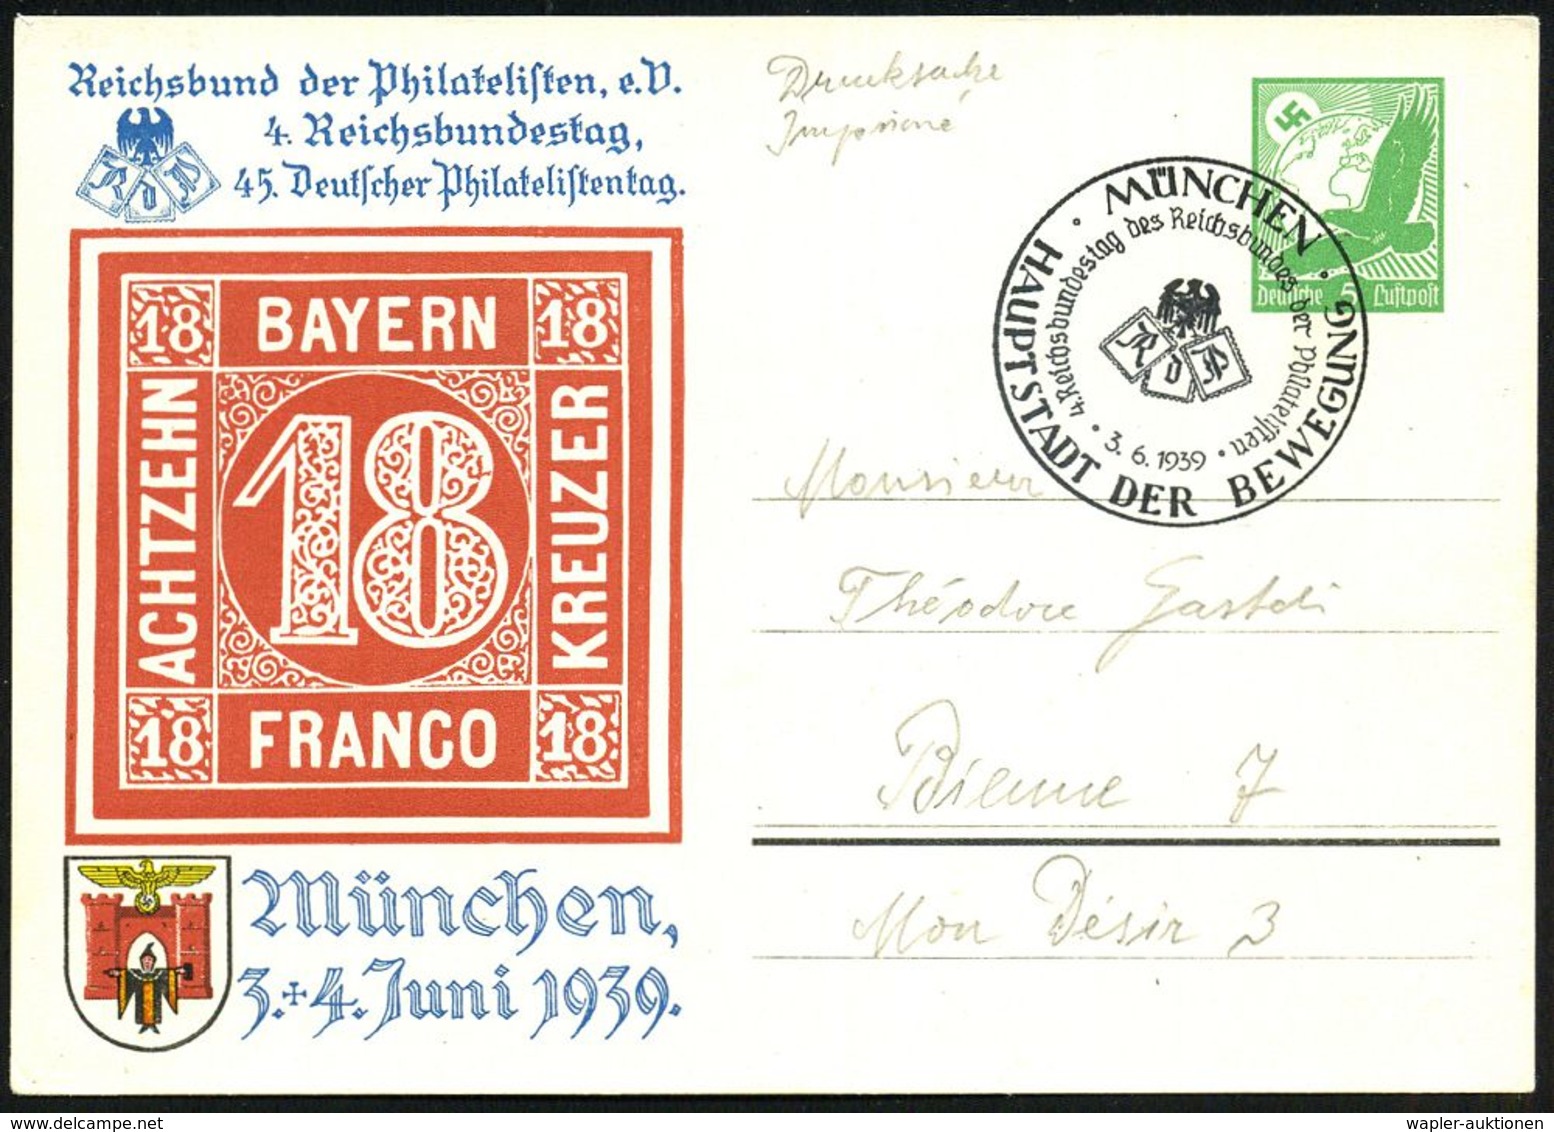 MÜNCHEN/ HDB/ 4.Reichsbundestag Des Reichsbundes Der Philatelisten 1939 (3.6.) SSt Auf PP 5 Pf. Adler, Grün: 4. Reichsbu - Filatelistische Tentoonstellingen